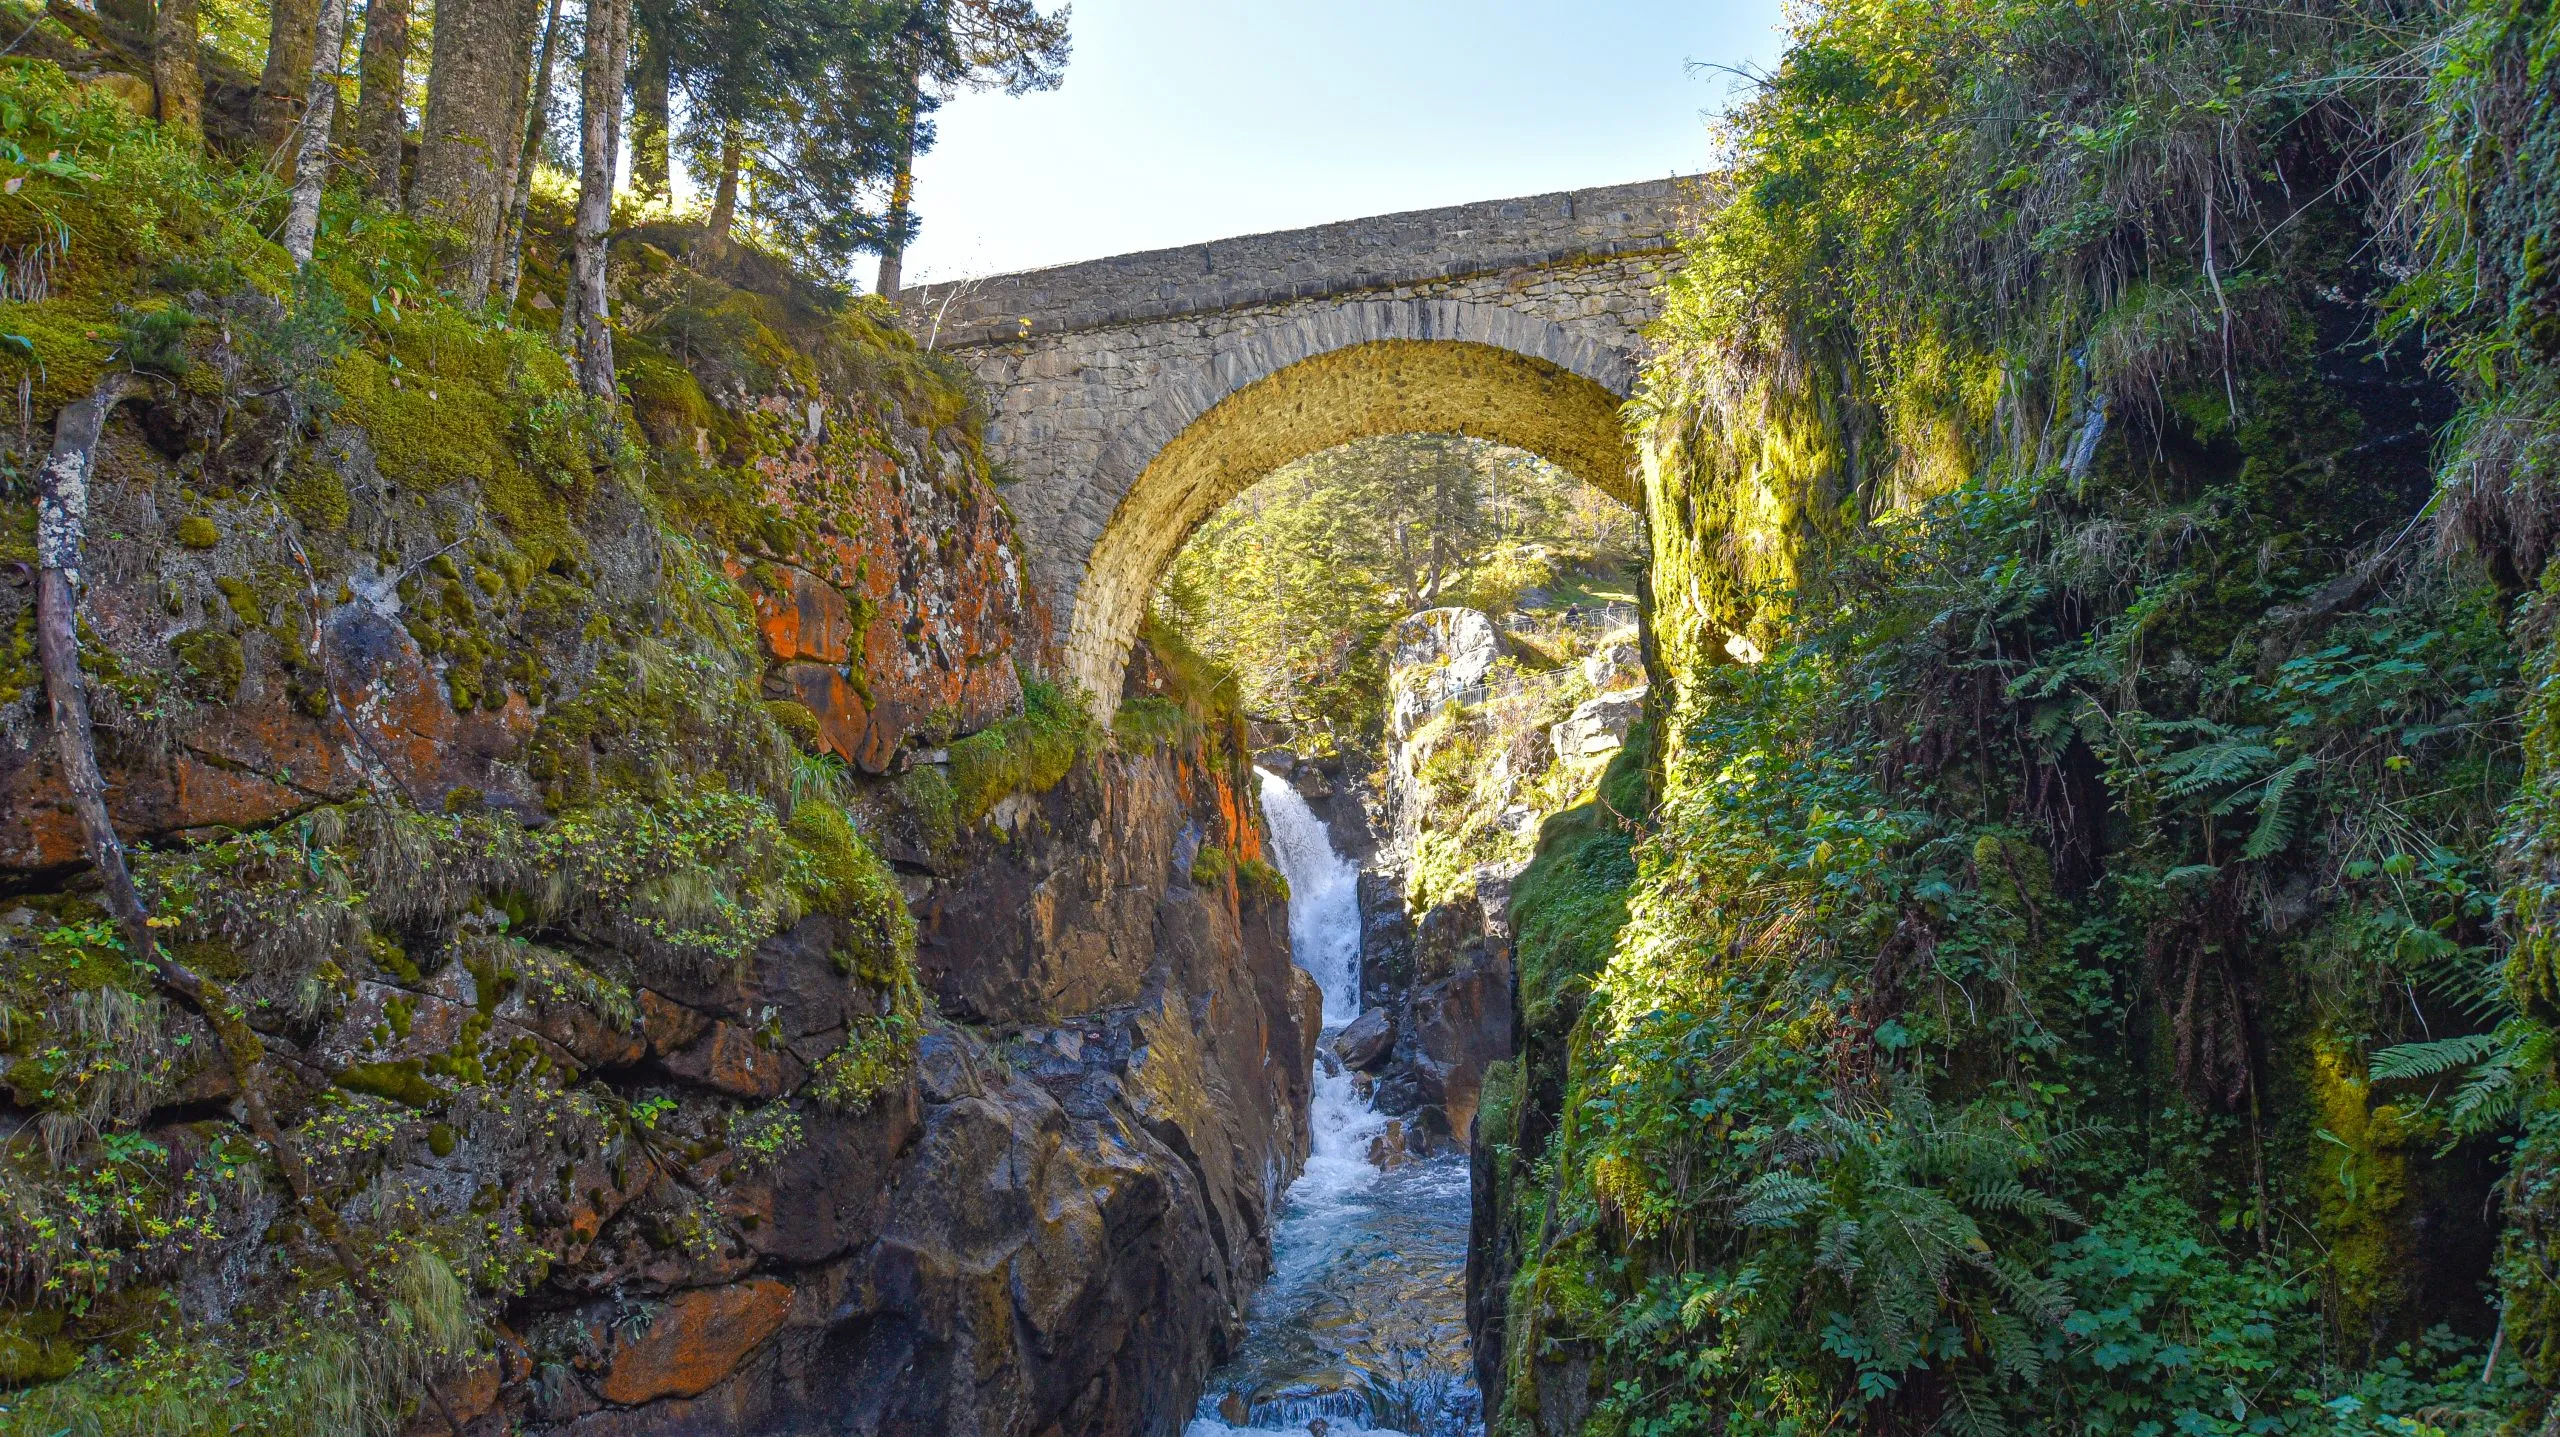 Cauterets, Frankrijk - 10 okt, 2021: De Pont d'Espagne brug over de Gave de Marcadau in het Nationaal Park van de Pyreneeën